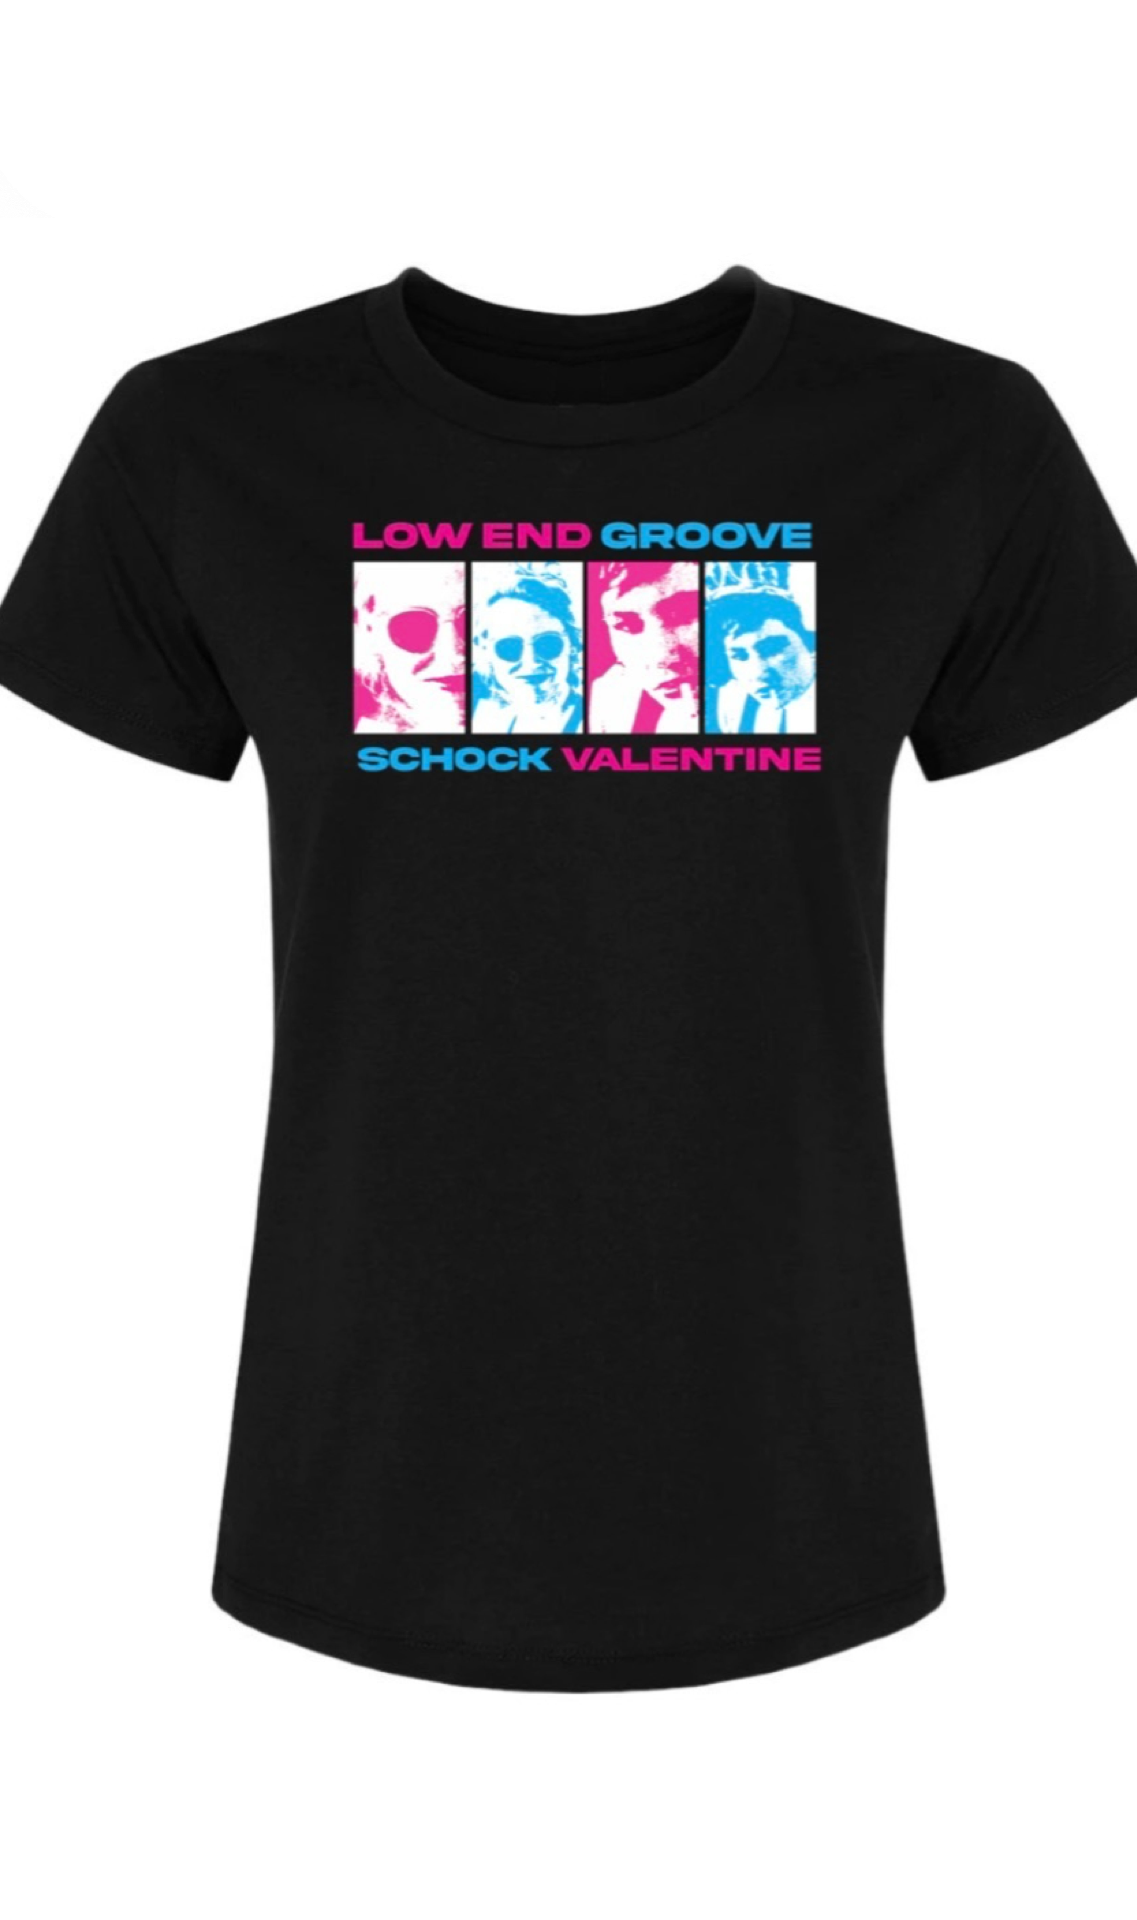 Gina Schock Kathy Valentine T-Shirts